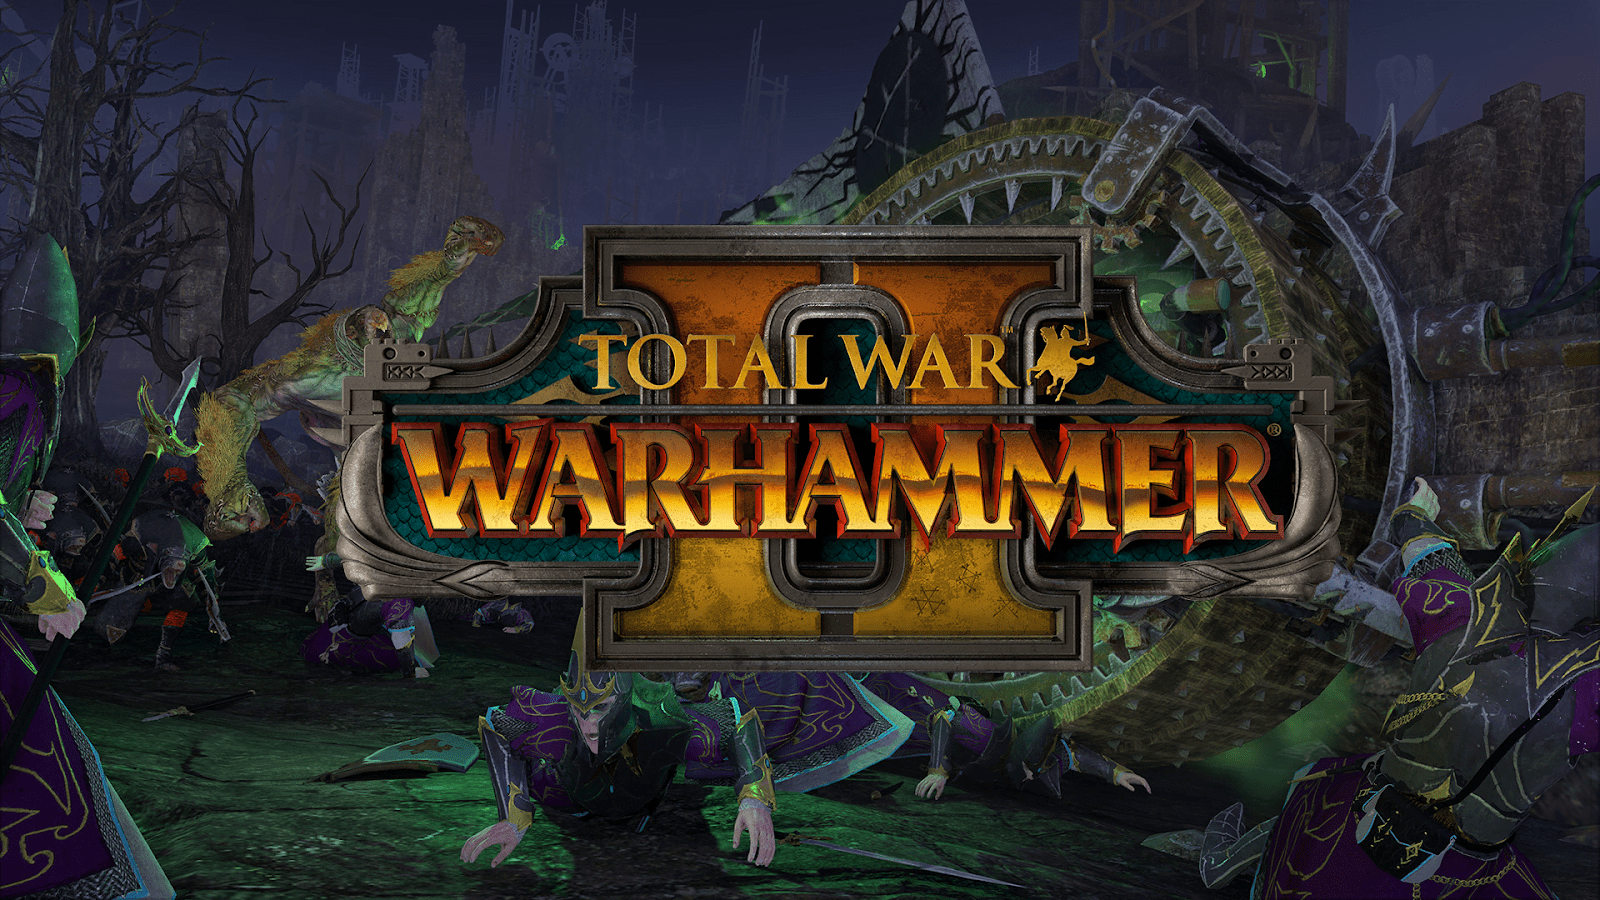 Total War Warhammer 2 PS4 Full Version Free Download